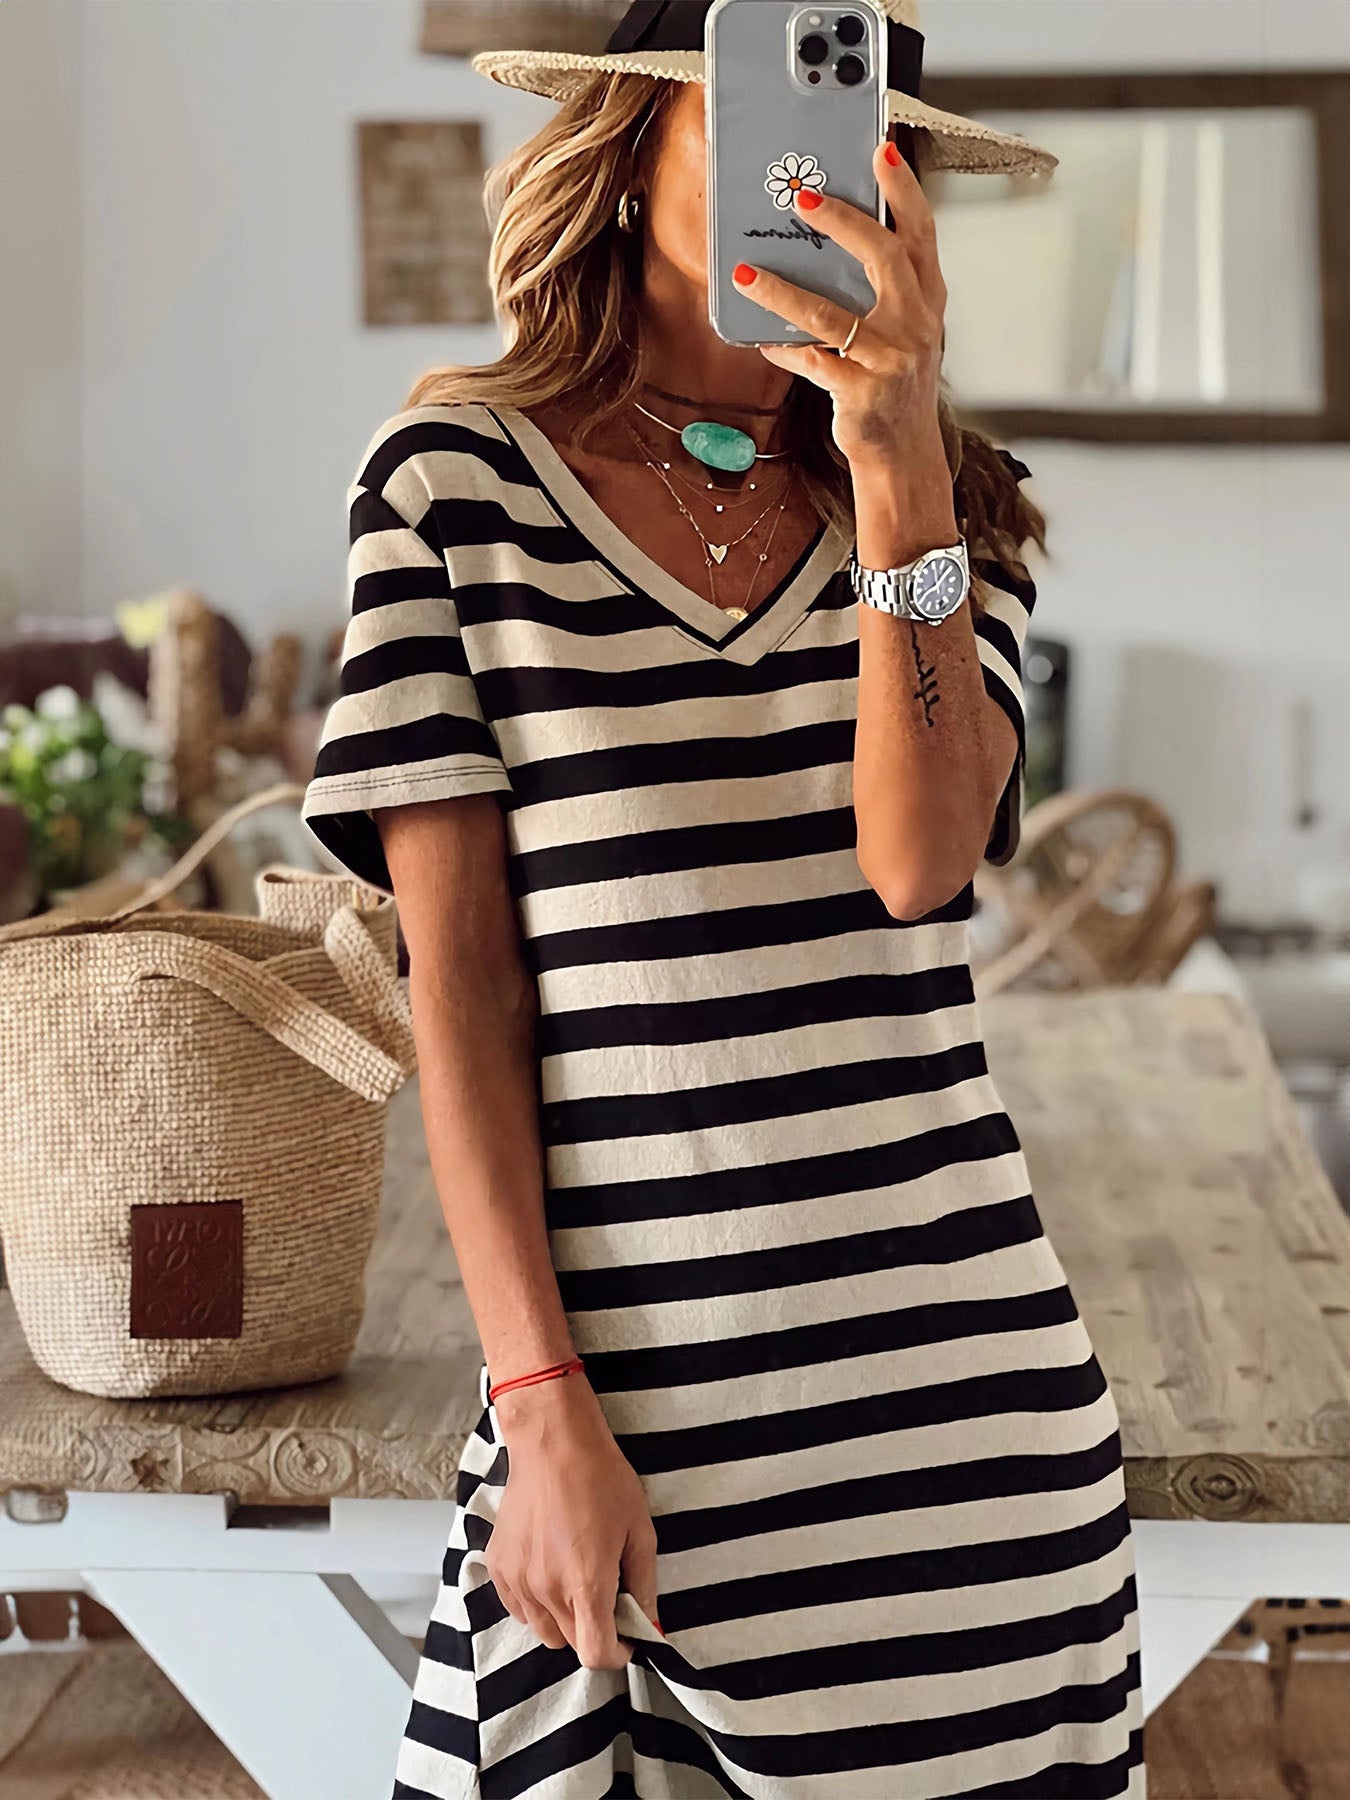 Vorioal Striped Slit Dress